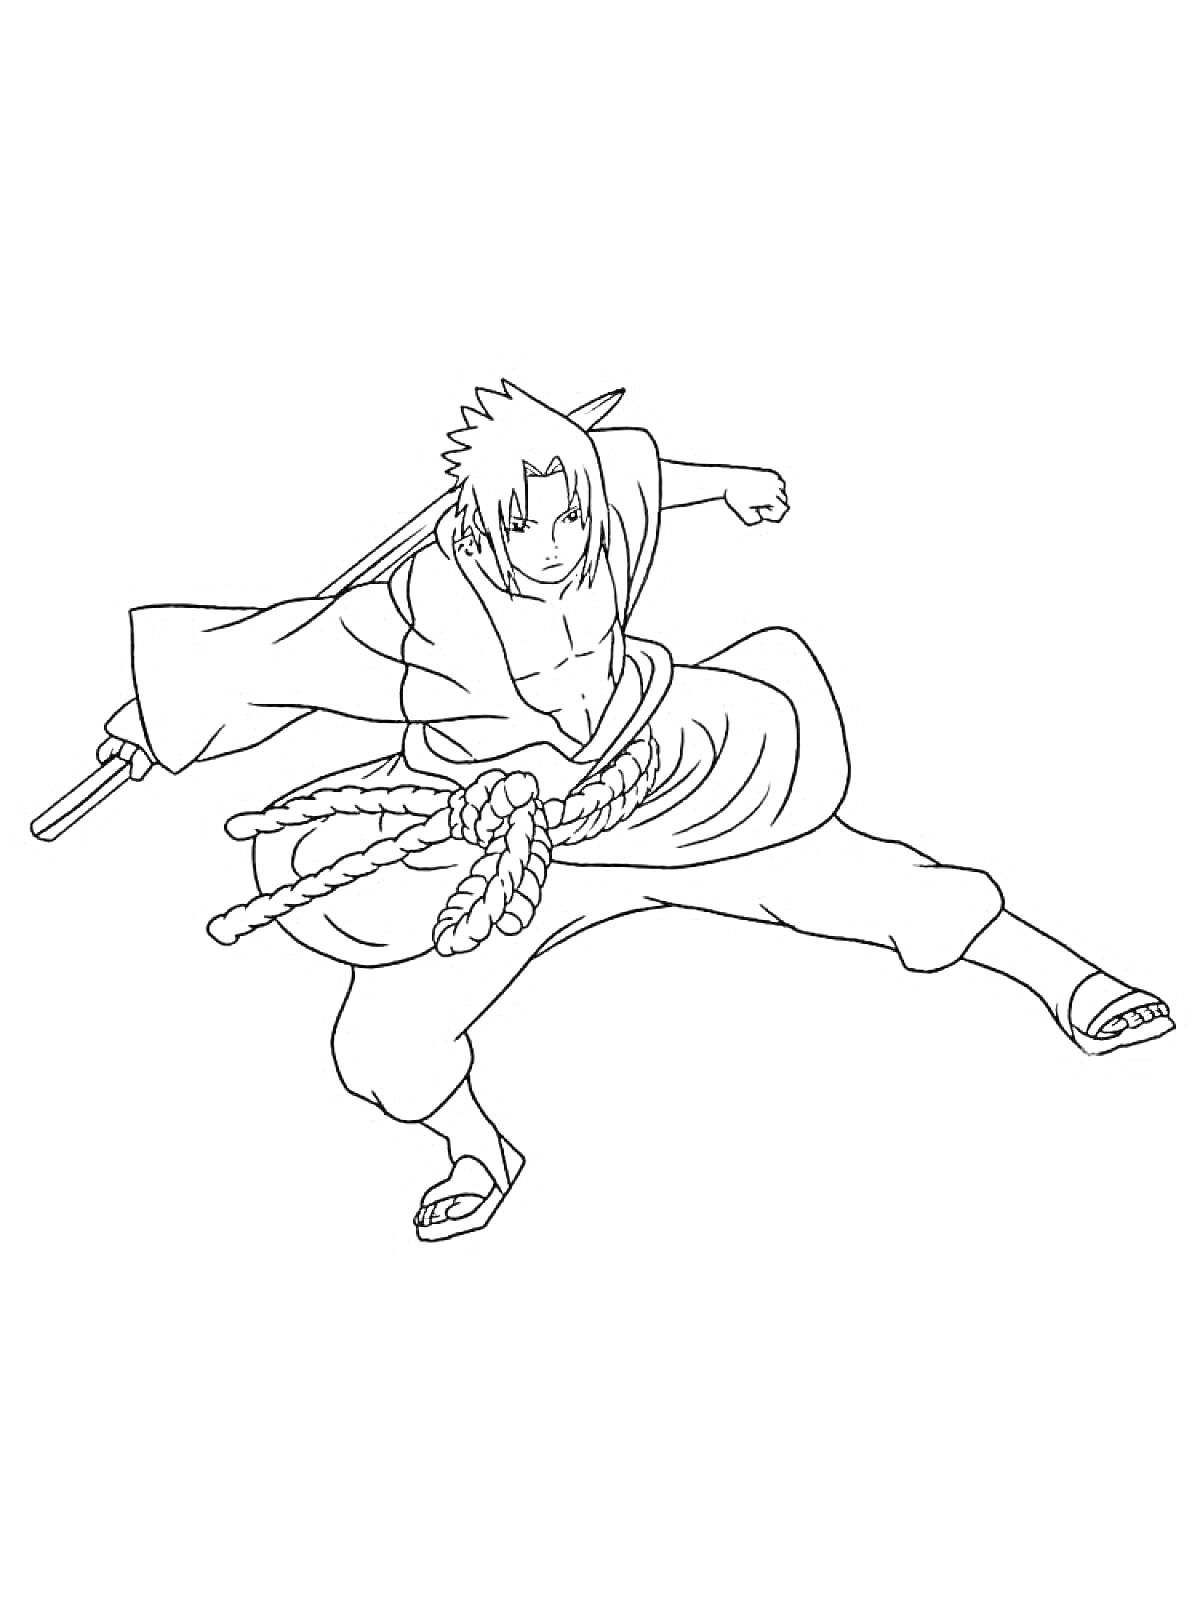 Раскраска Саске Учиха в боевой стойке с катаной, веревкой вокруг пояса и длинными рукавами